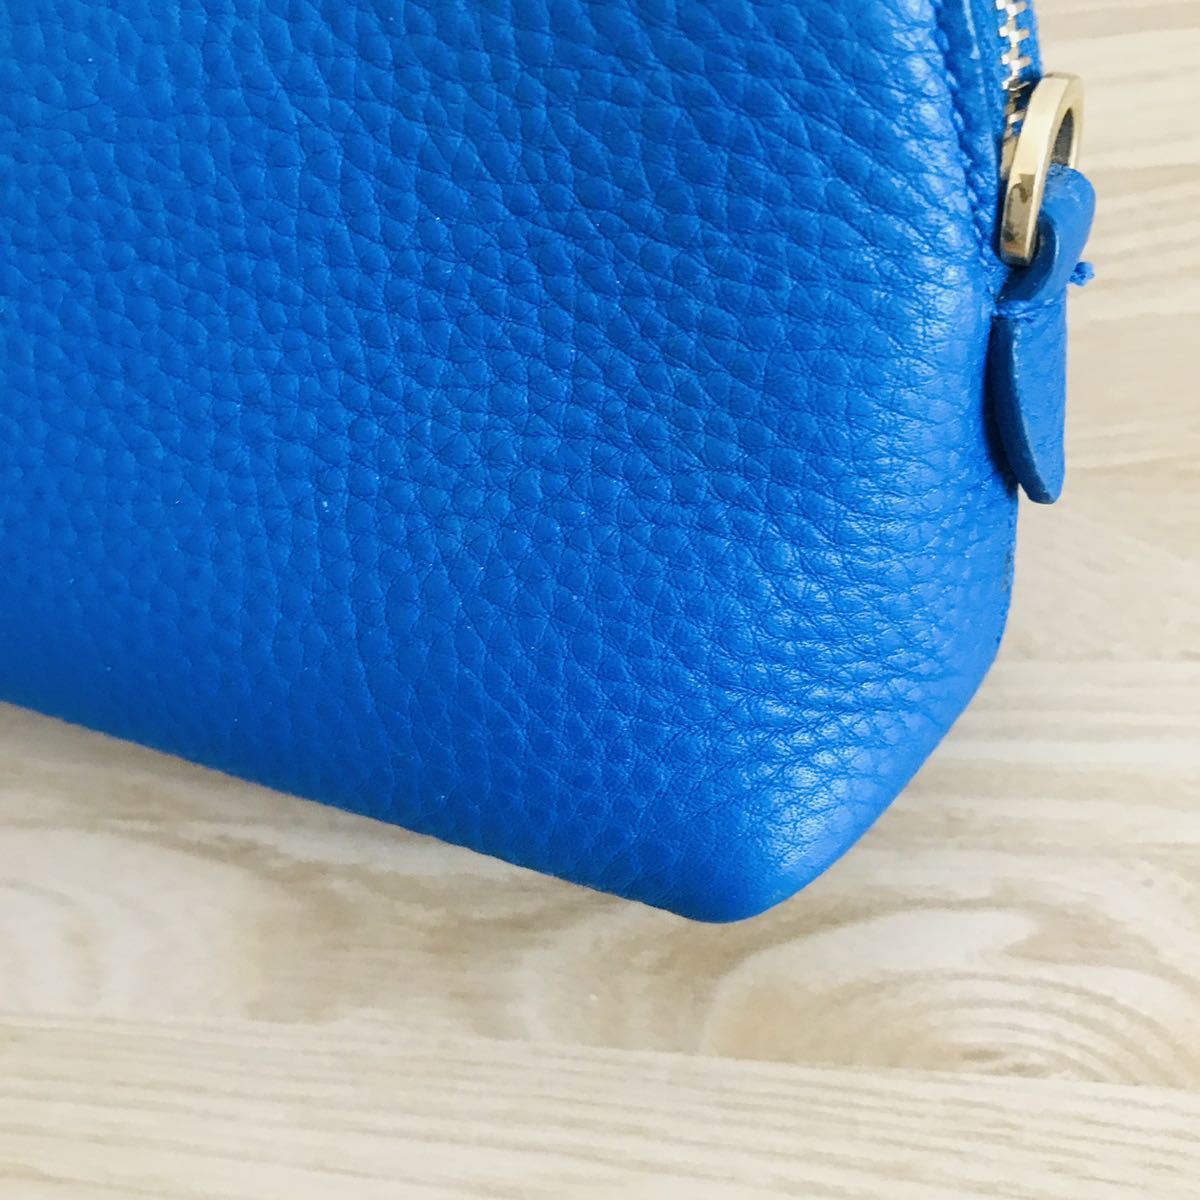  прекрасный товар PRADA Prada купол type кожа сумка голубой 